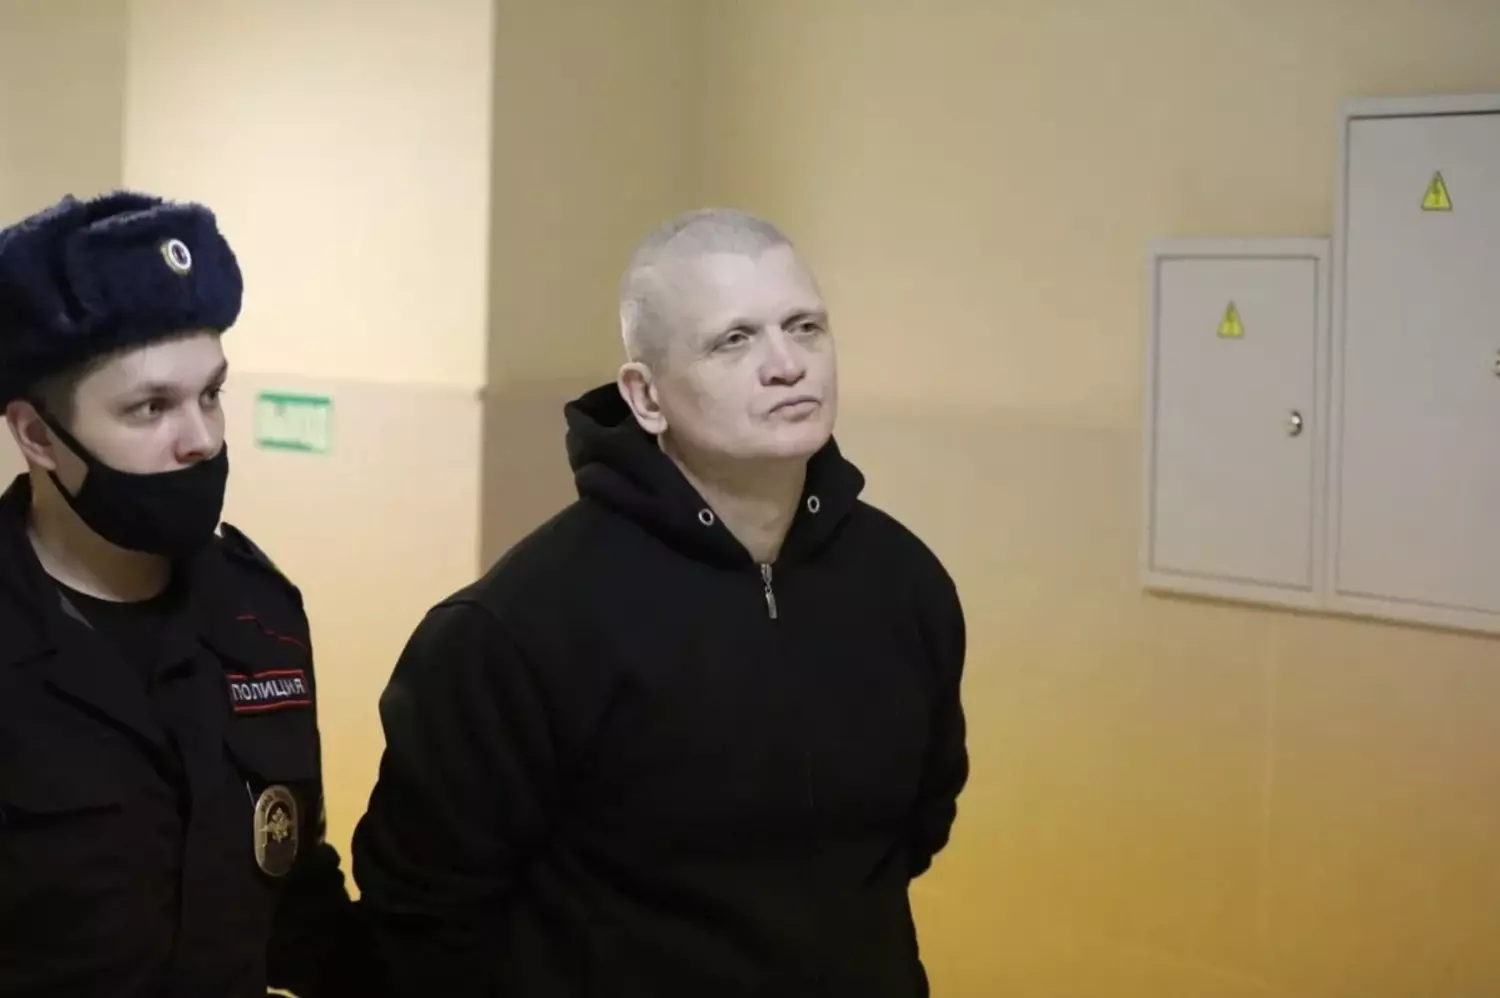 Активиста Евгения Туганкова посадили на 1,5 года за применение «неопасного для жизни и здоровья» насилия в отношении полицейского